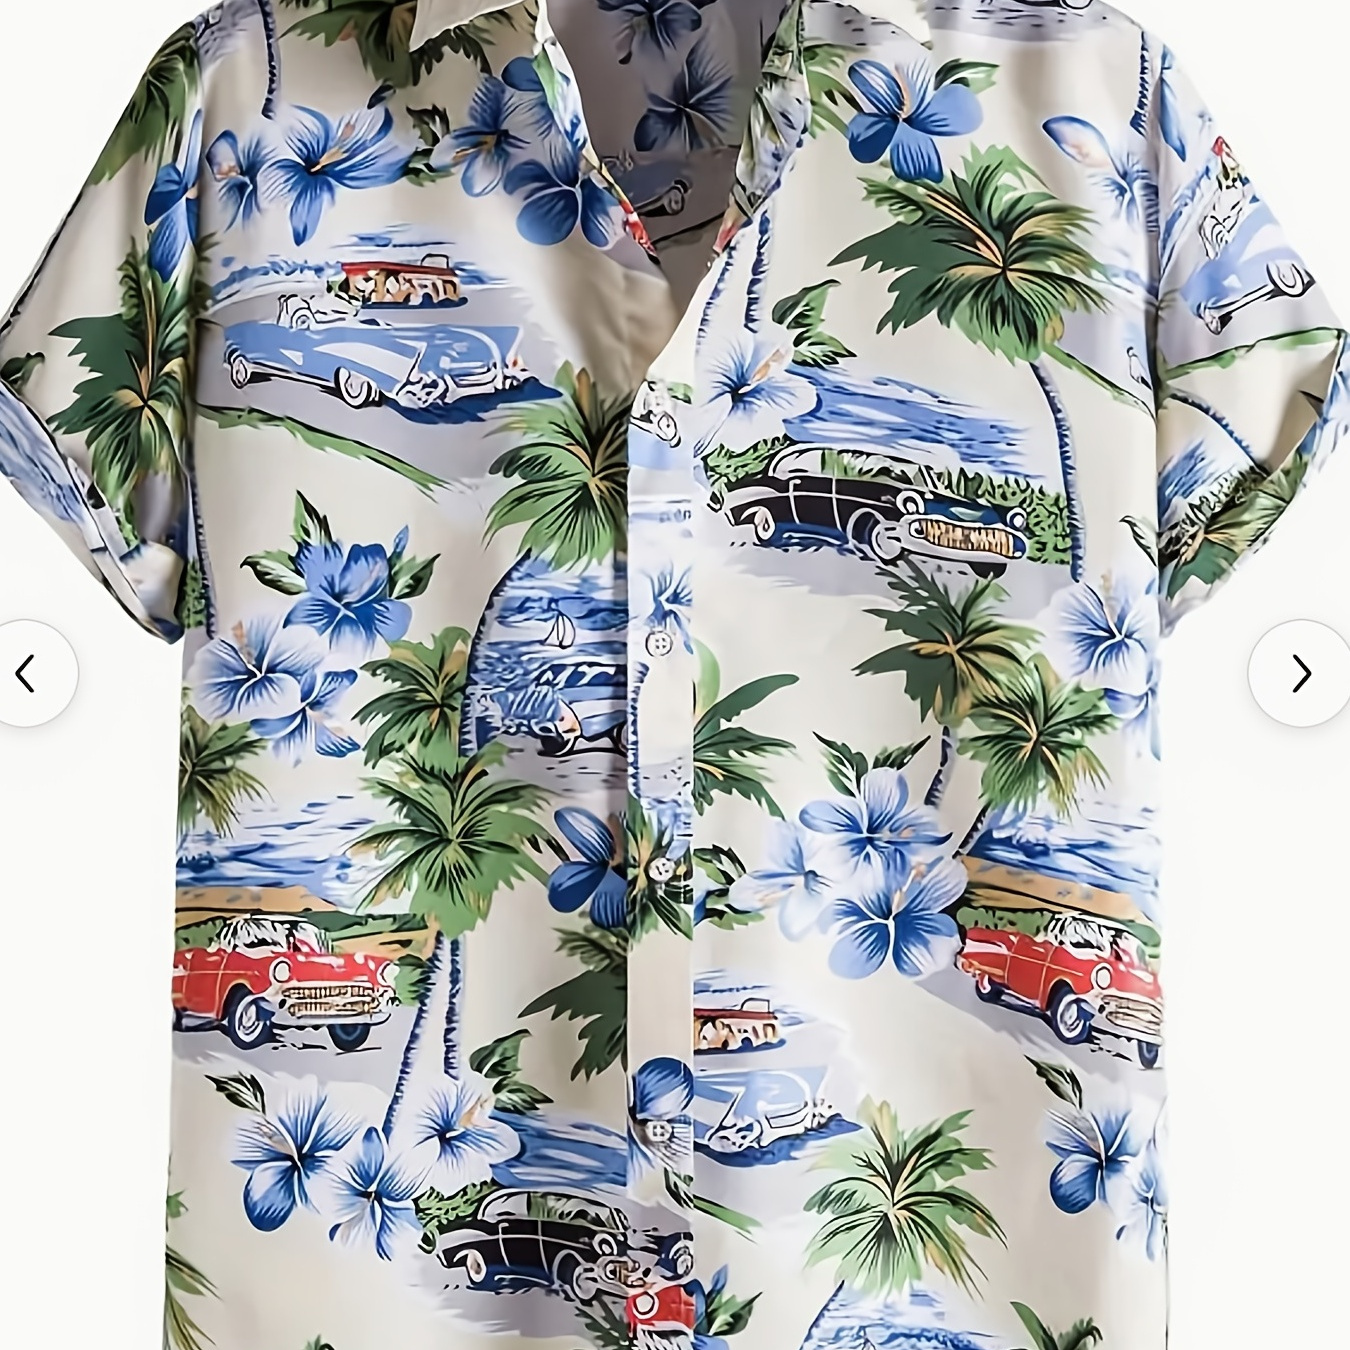 

Retro Cat & Coconut Tree Print Men's Casual Short Sleeve Hawaiian Shirt, Men's Shirt For Summer Vacation Resort, Tops For Men, Gift For Men